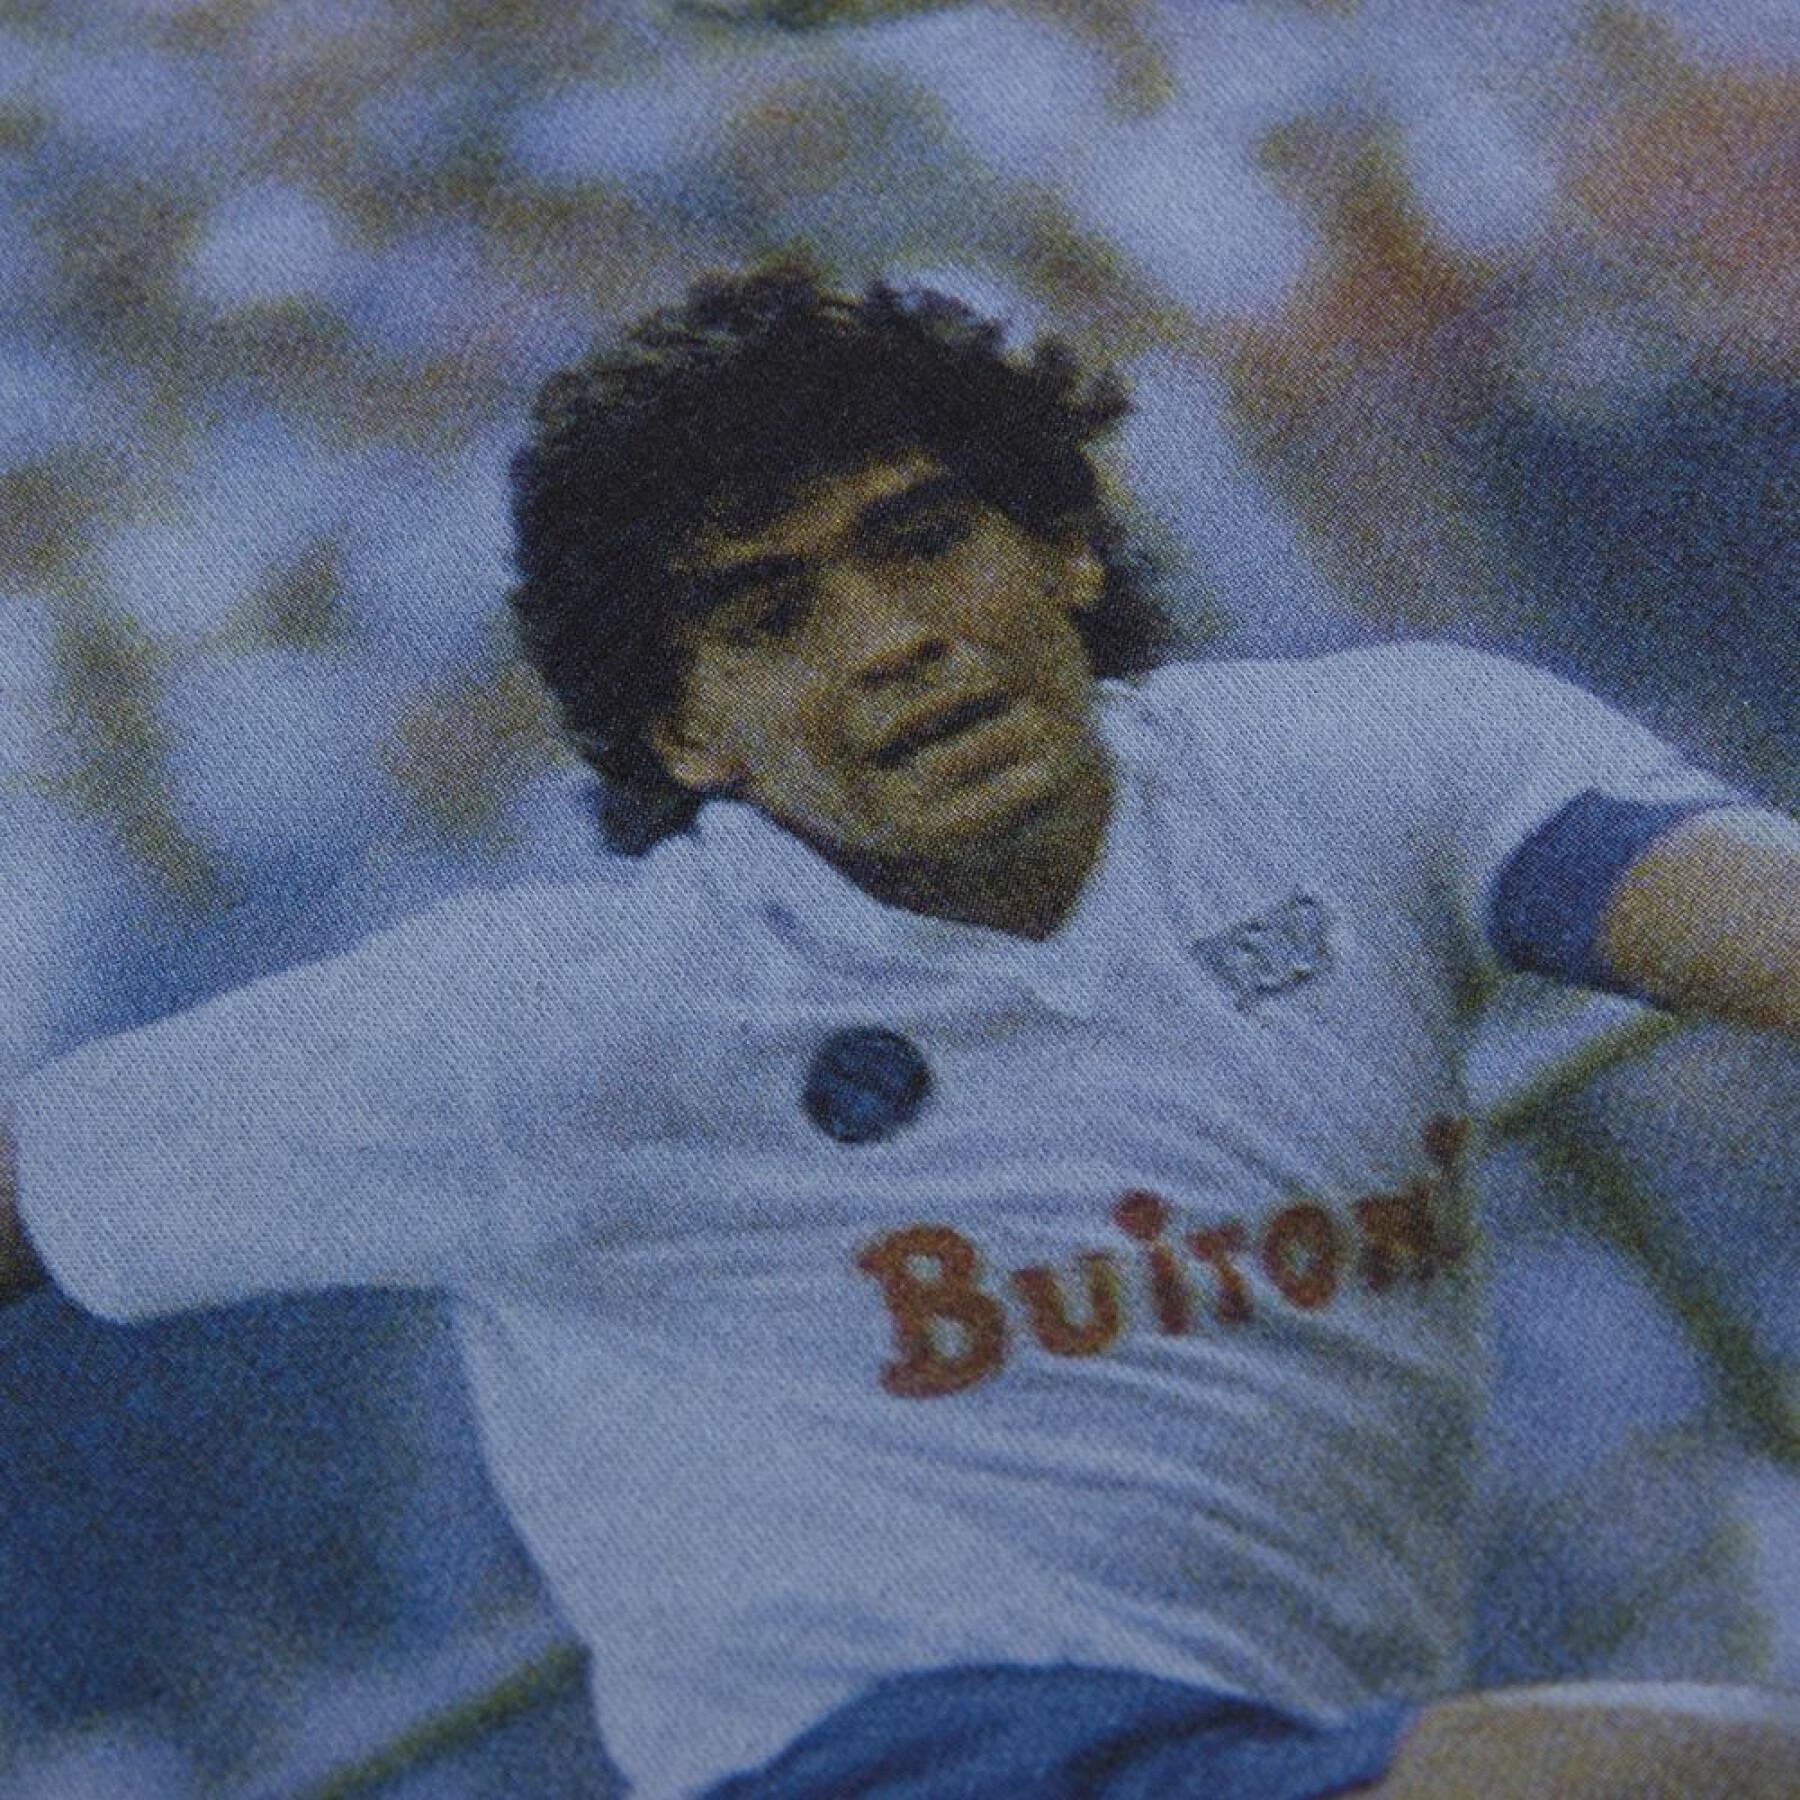 away T-shirt Copa SSC Napoli Maradona